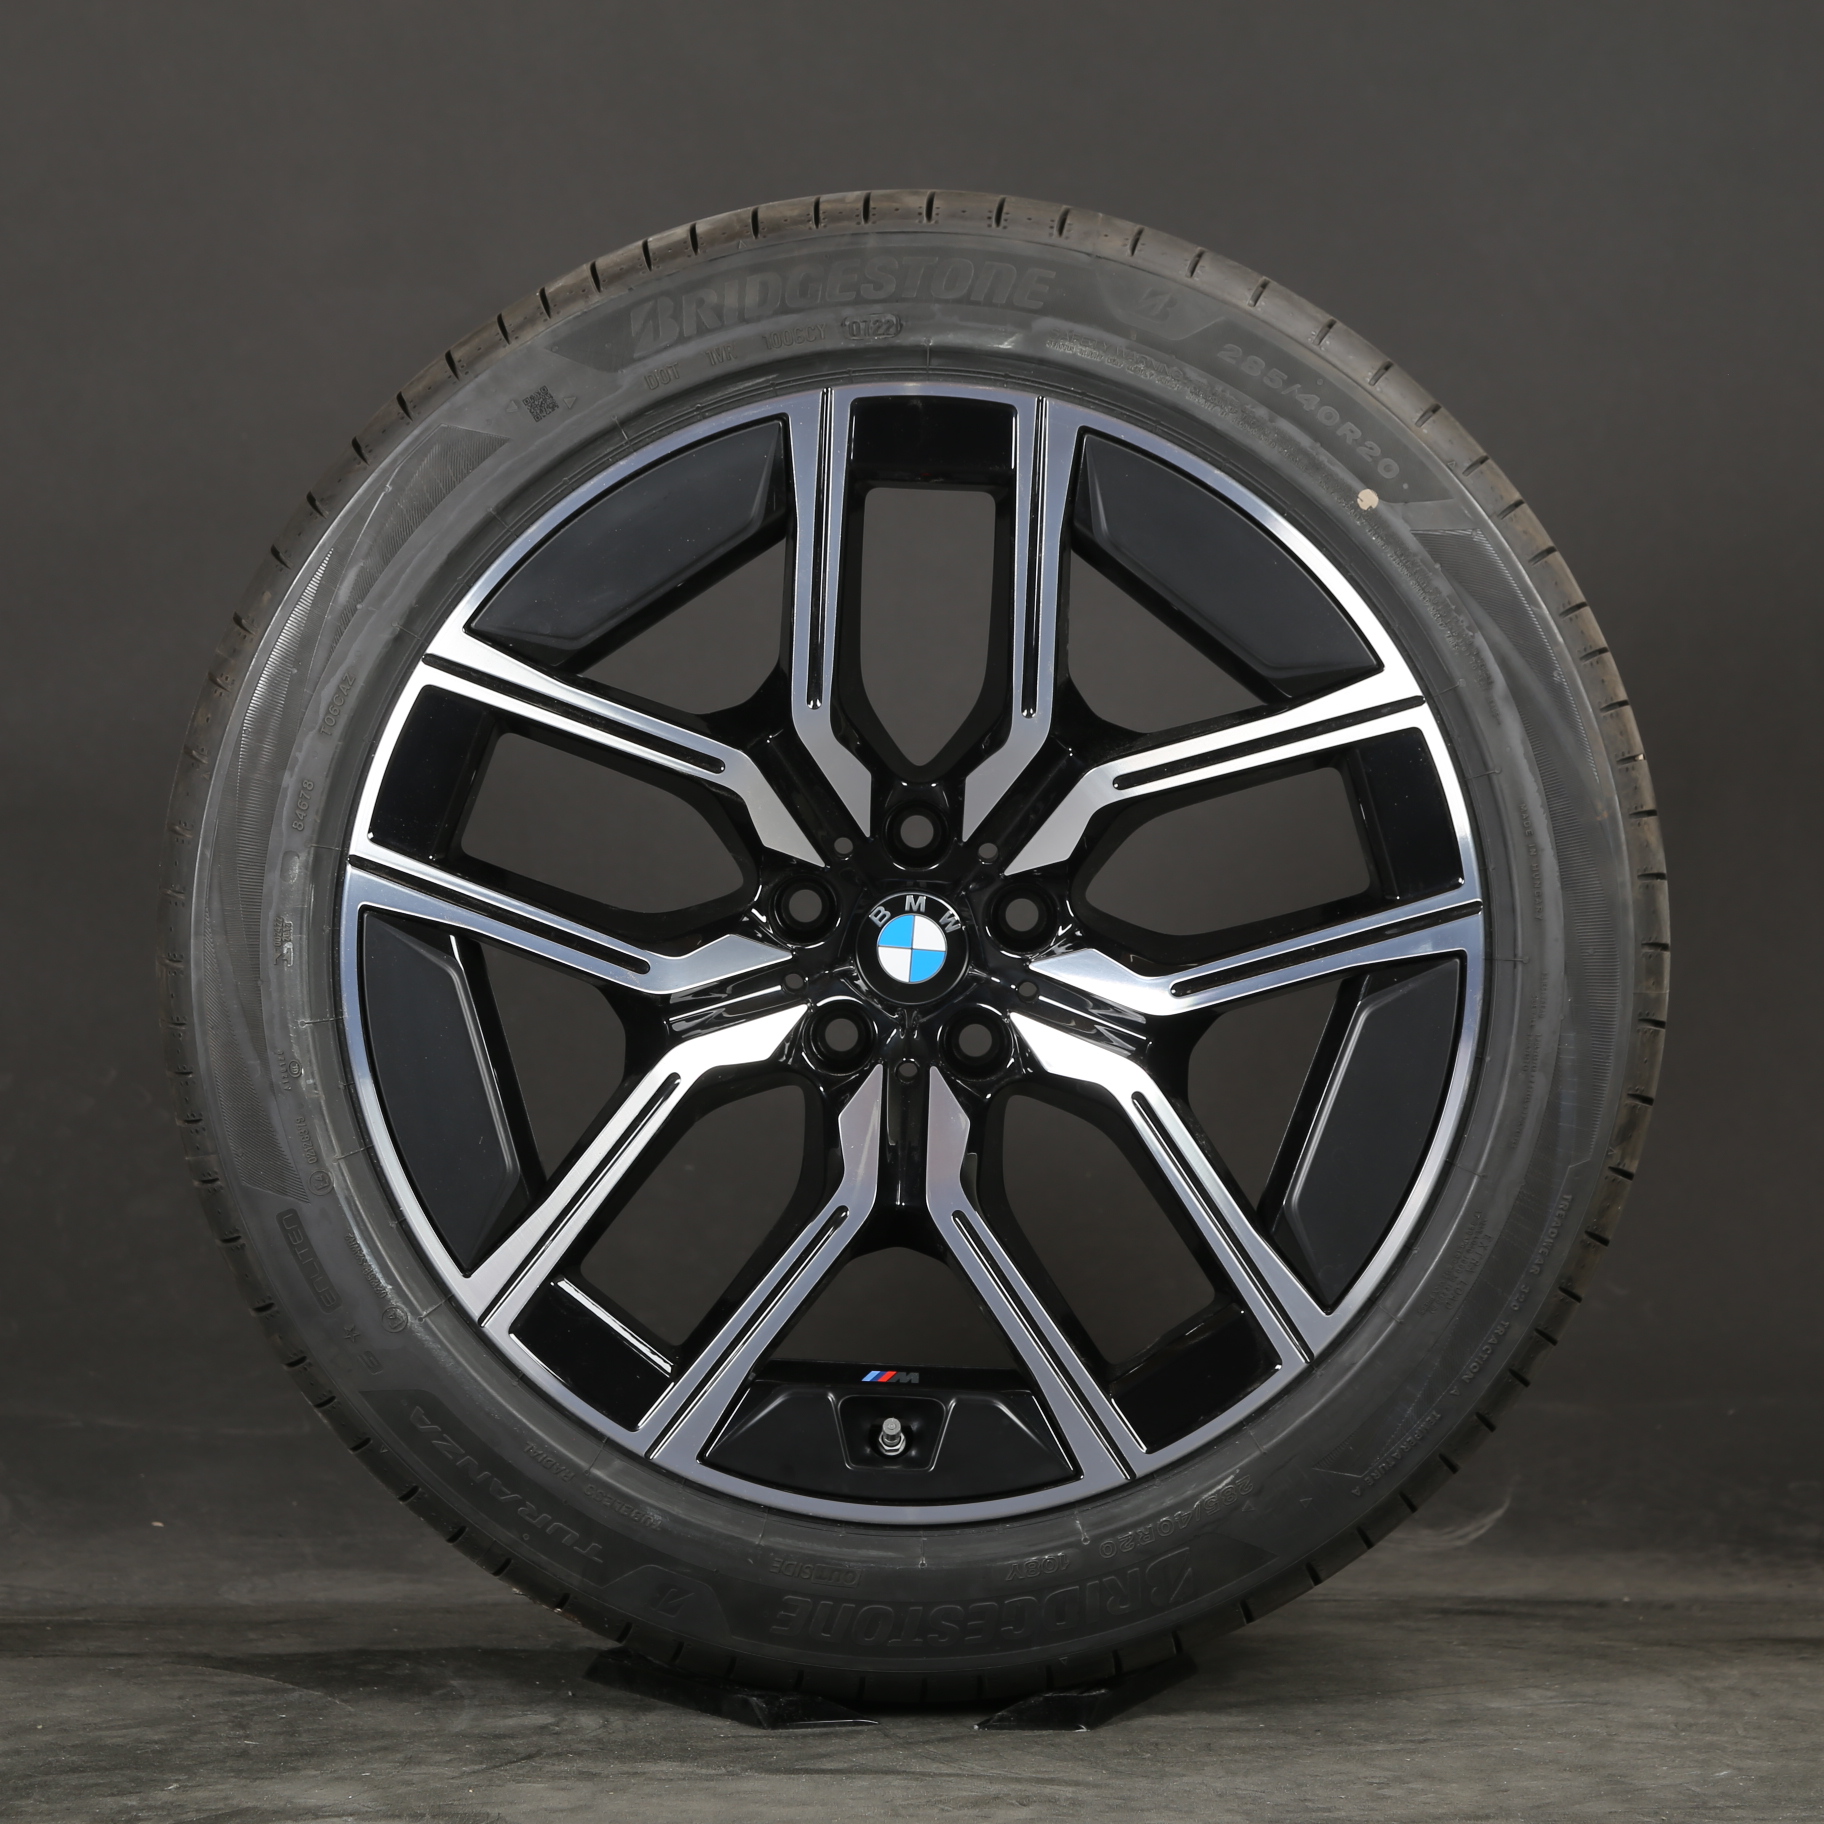 Llantas de verano de 20 pulgadas originales BMW serie 7 i7 G70 M907 5A19DE8 907M neumáticos de verano